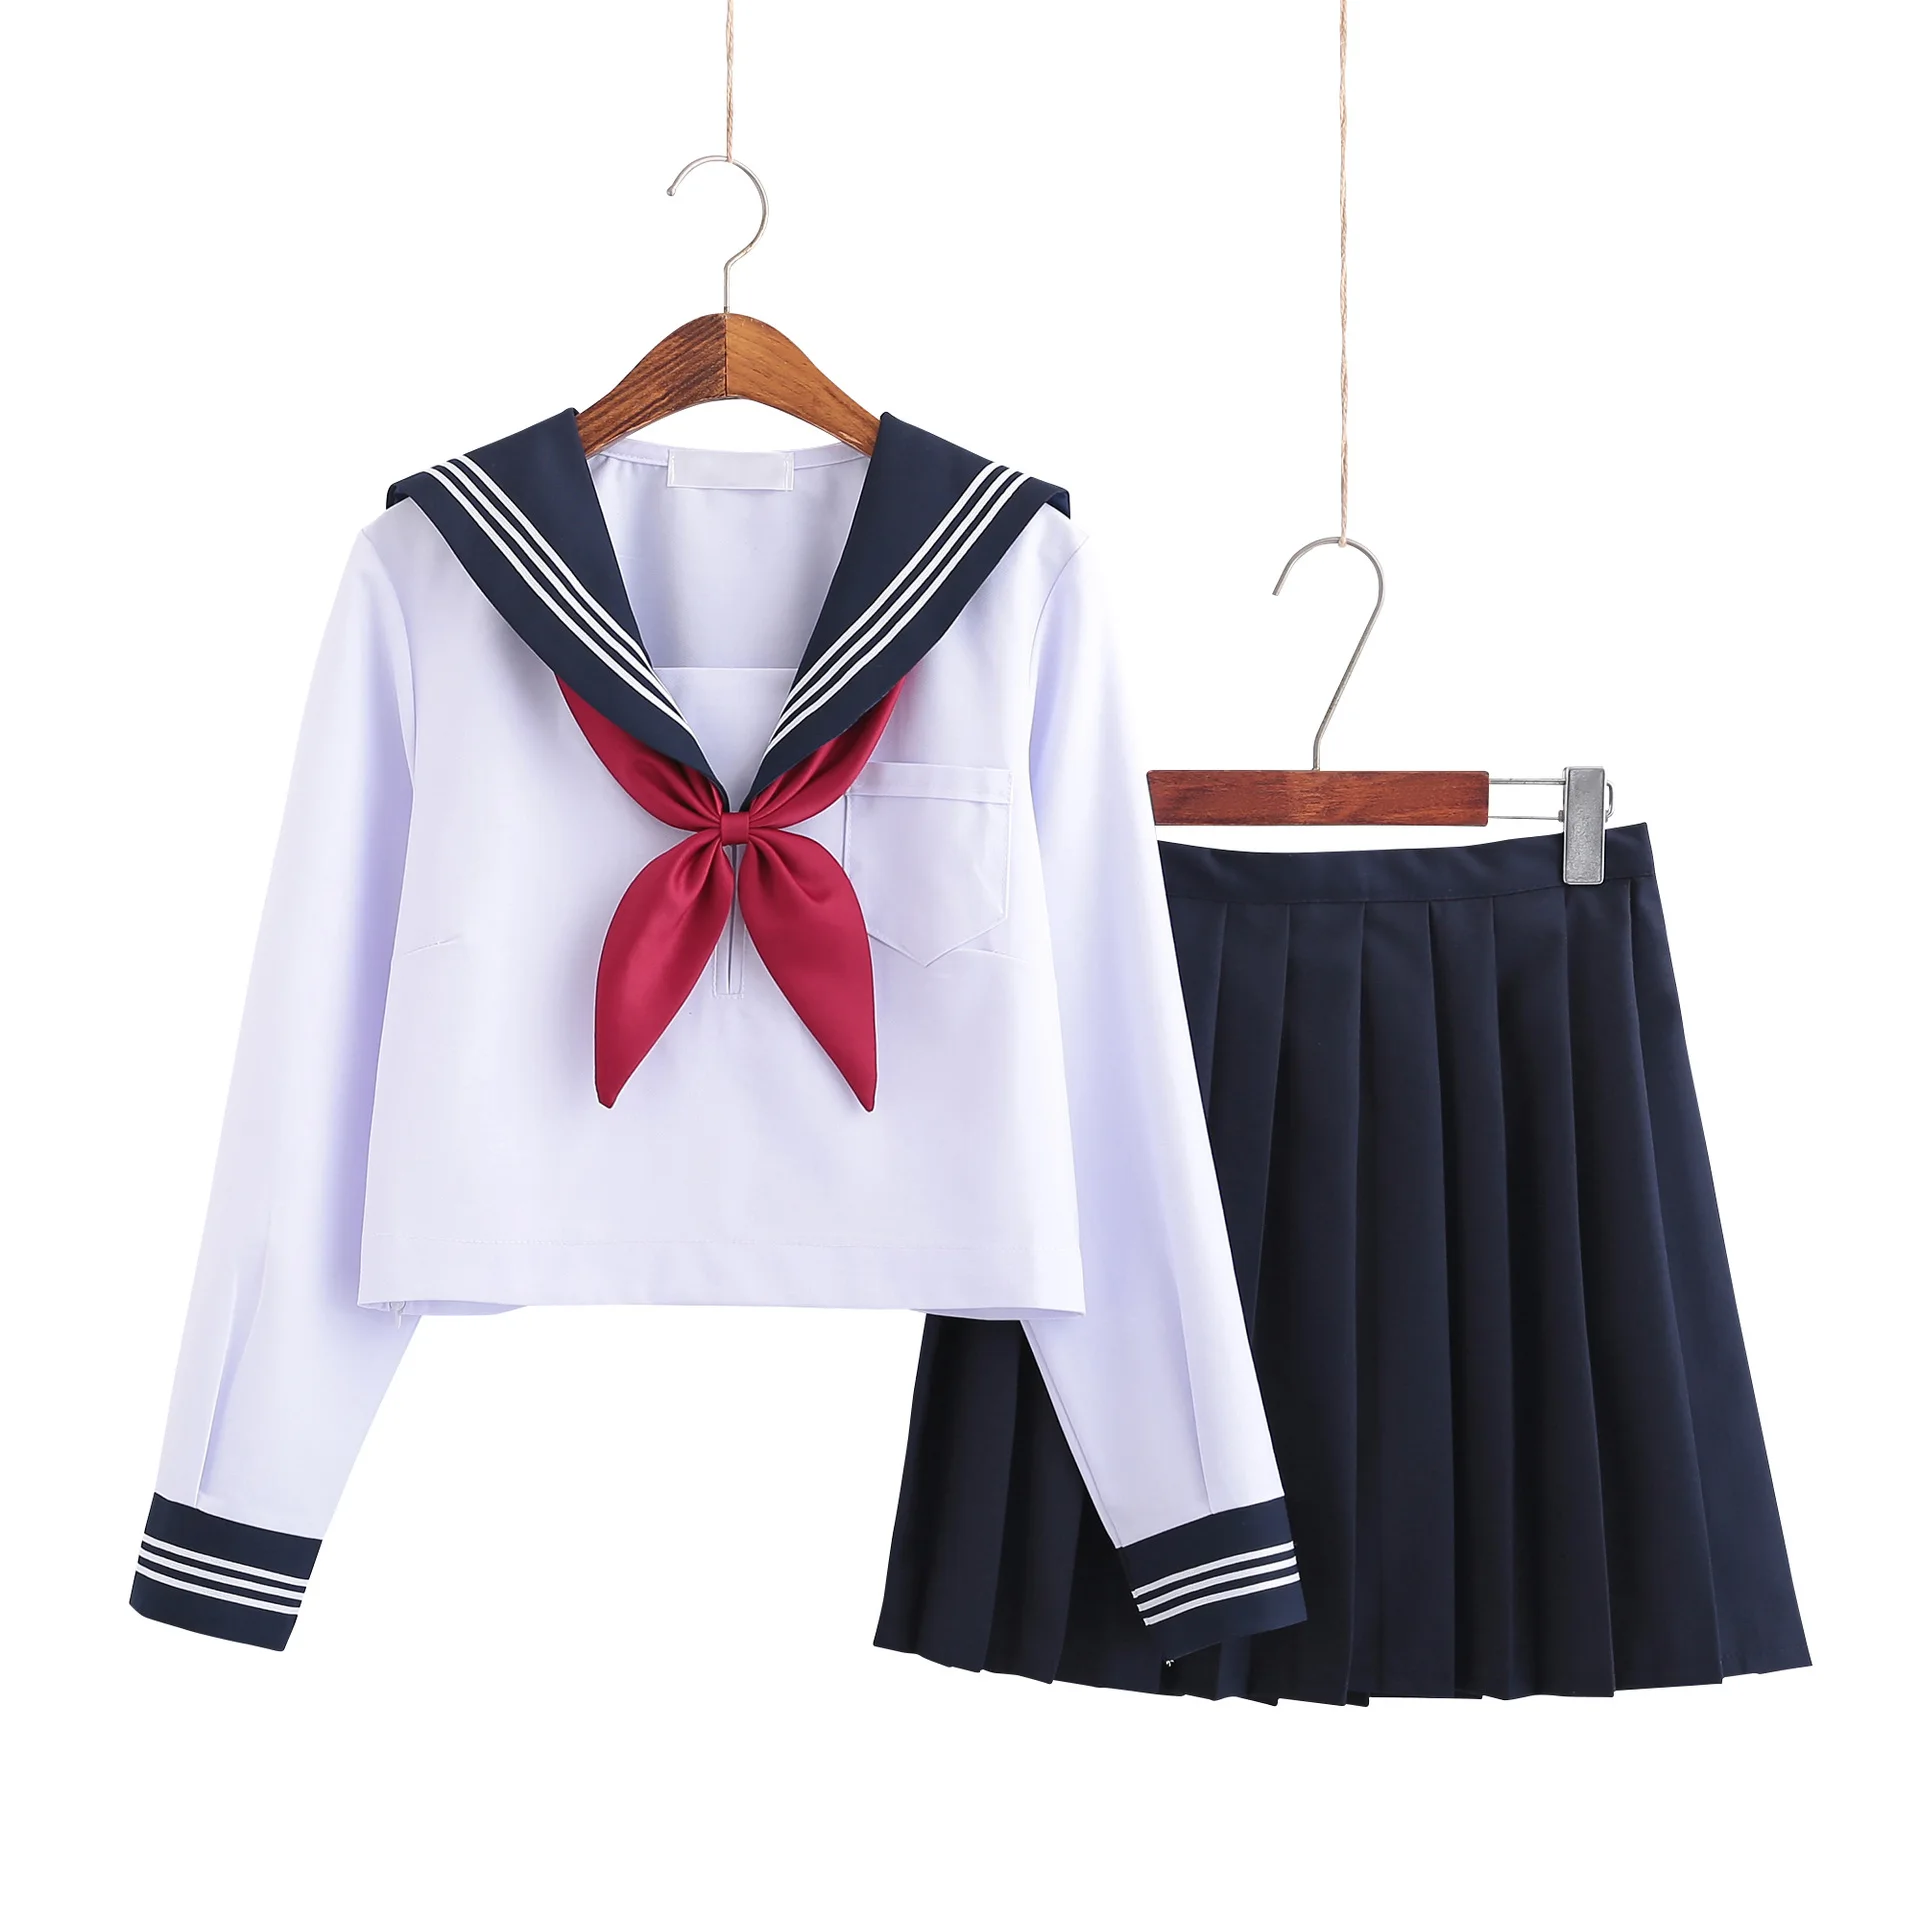 Obrázok /content/Biela-školáčka-jednotné-námorník-školské-uniformy-4-195868.jpeg